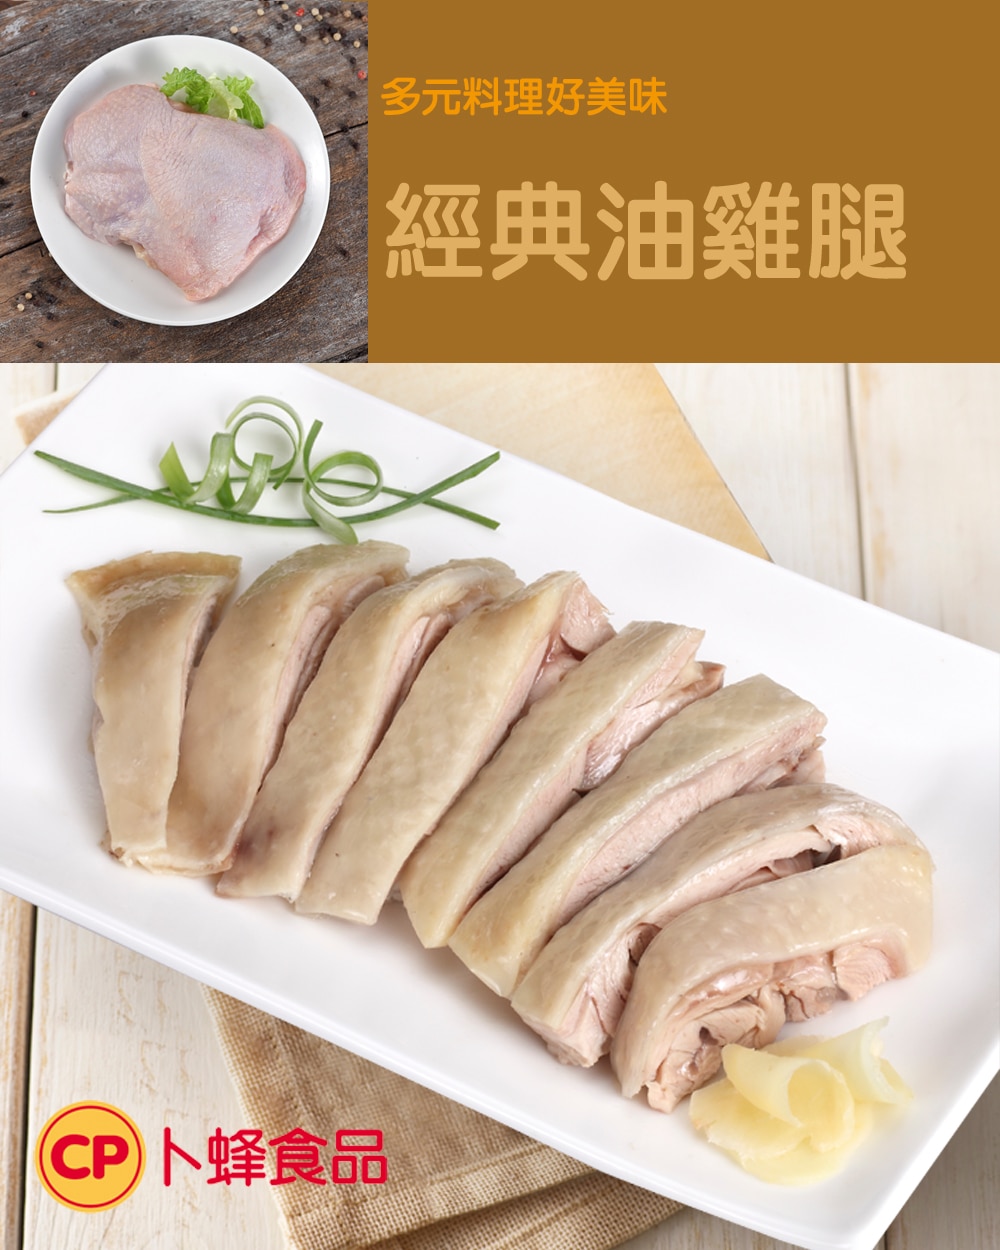 卜蜂 冷凍去骨雞腿肉 2.5公斤 X 6入，可以簡單做成美味料理，推薦食譜為經典油雞腿。